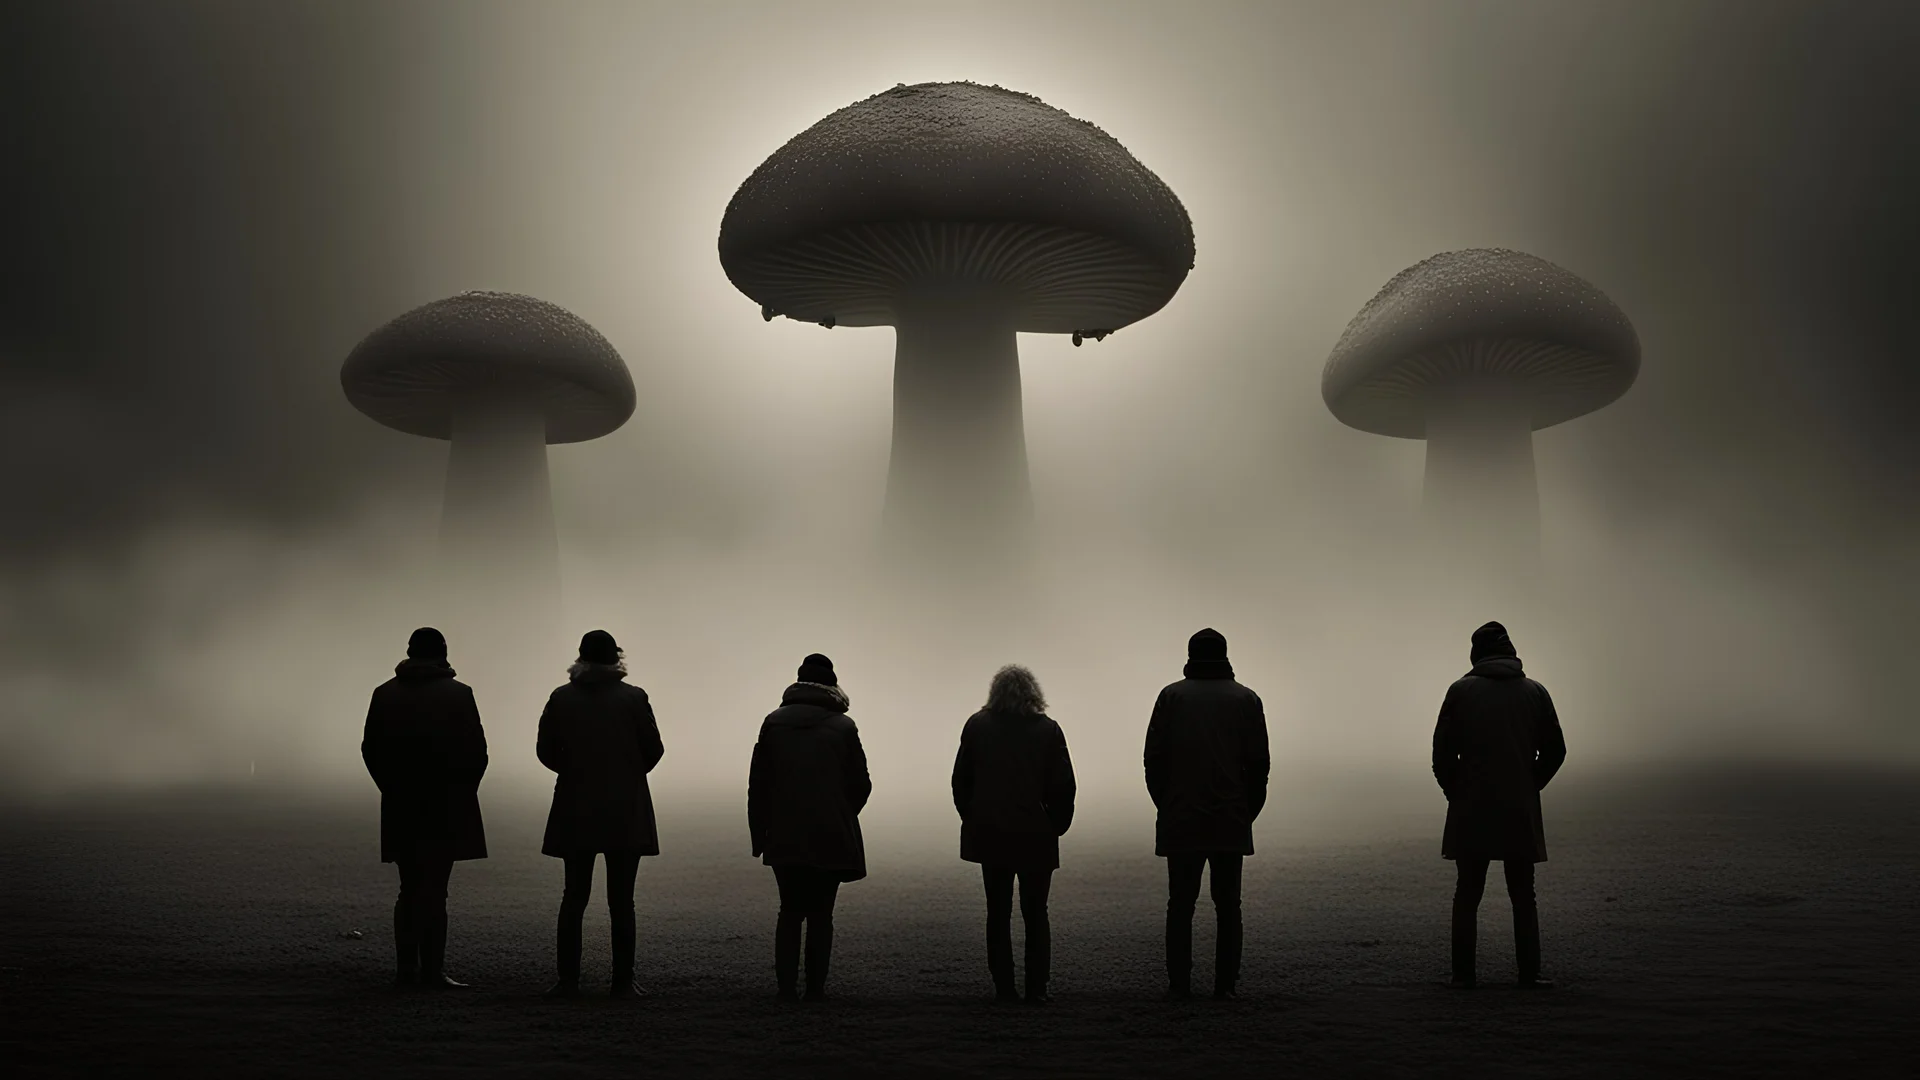 Genera una fotografía intrigante, en la que un grupo de extrañas personas es atraída por una extraña nave extrarrestre con forma de hongo gigante y pequeños hongos luminosos sobrevuelan alrededor. Con una iluminacion evocadora y mucha neblina.